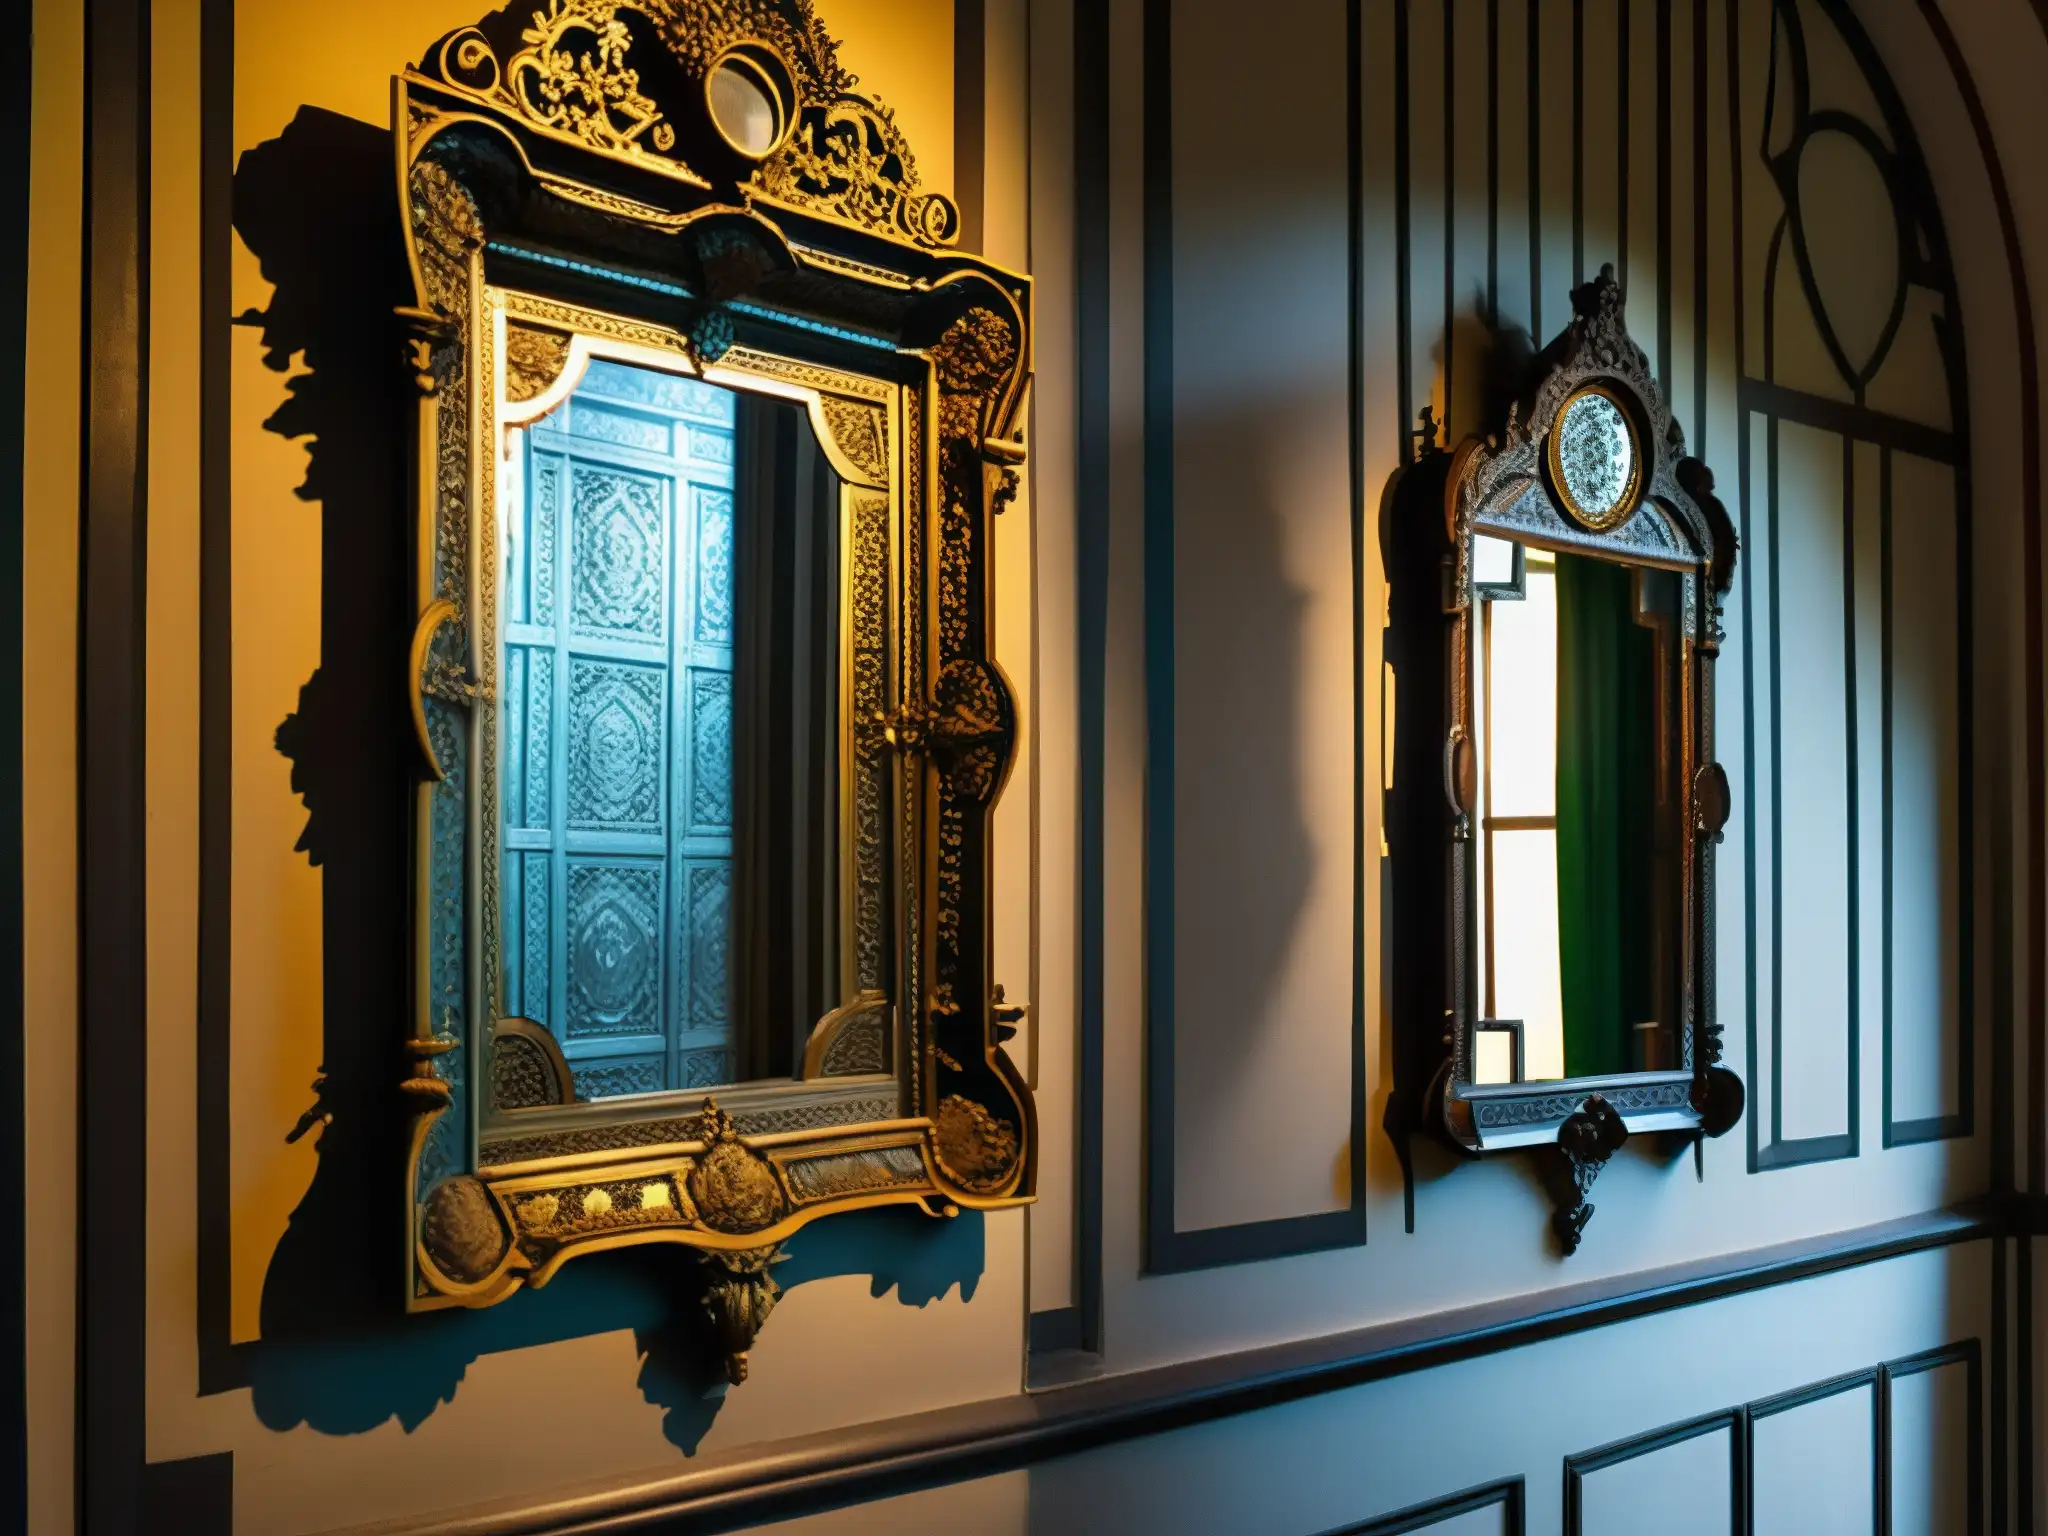 Detalle de los espejos antiguos en La Casa de los Espejos de Quito, evocando el encanto histórico y la enigmática atracción de la mansión encantada